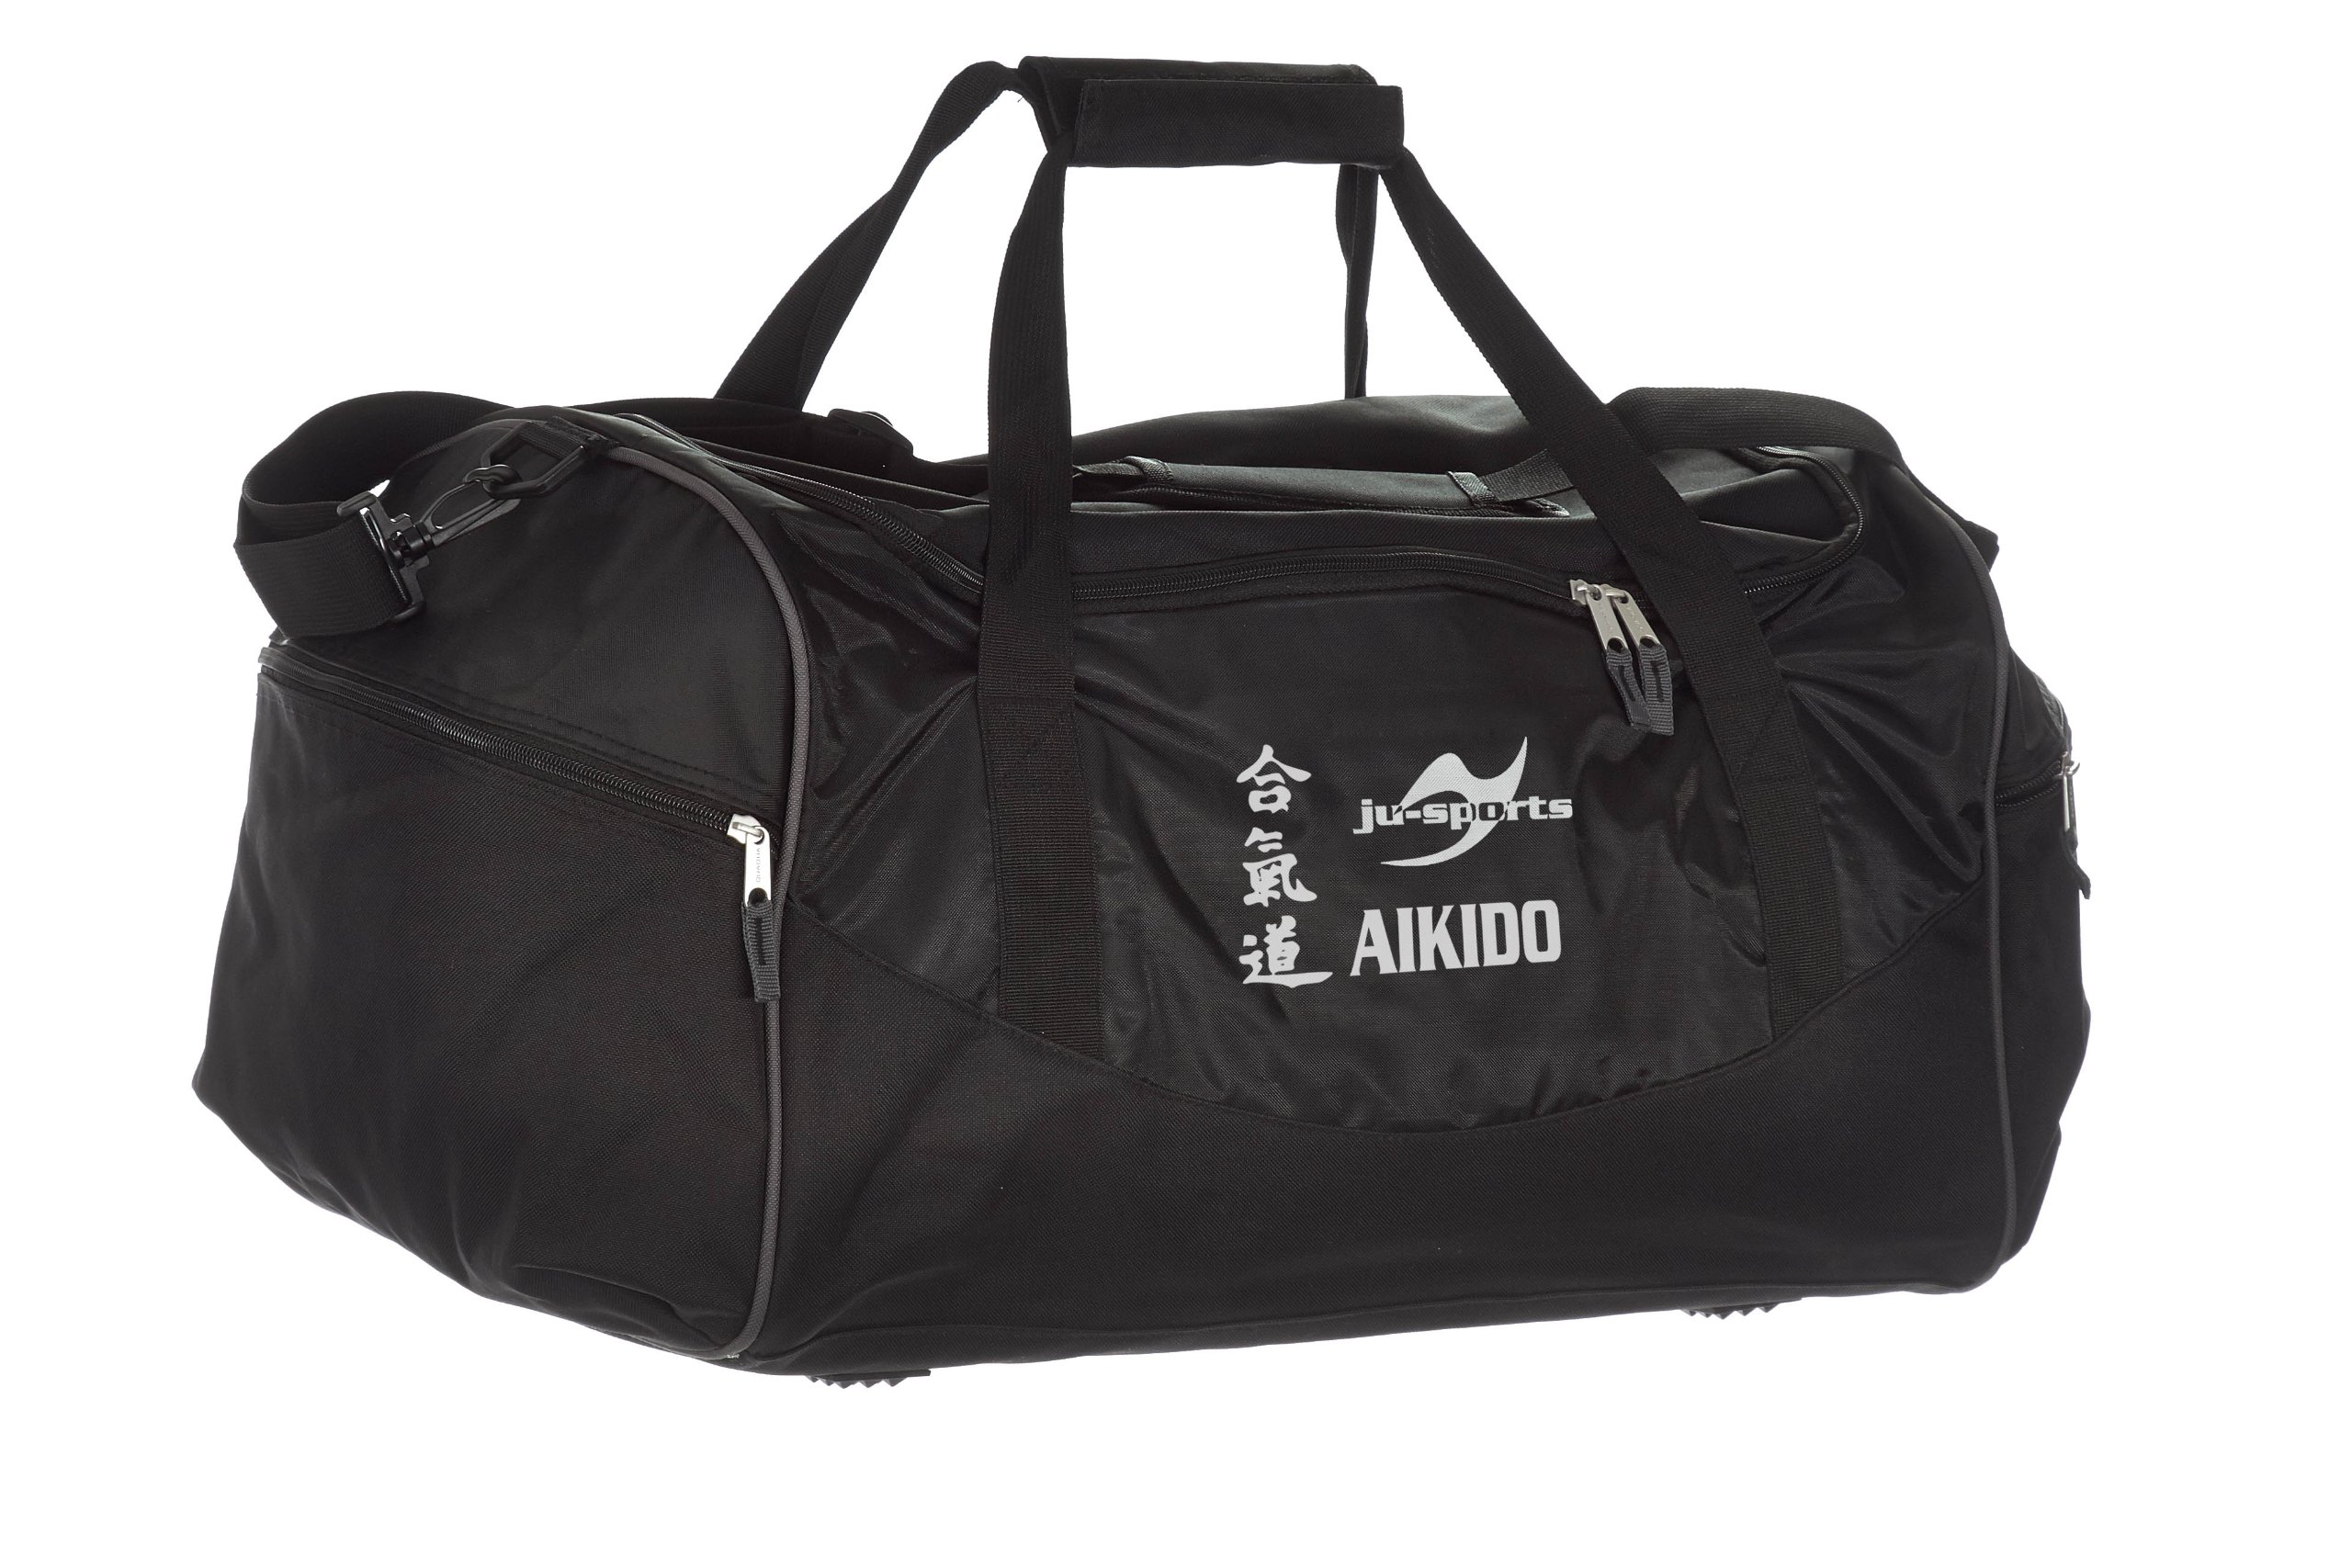 Ju-Sports Tasche Team schwarz Aikido